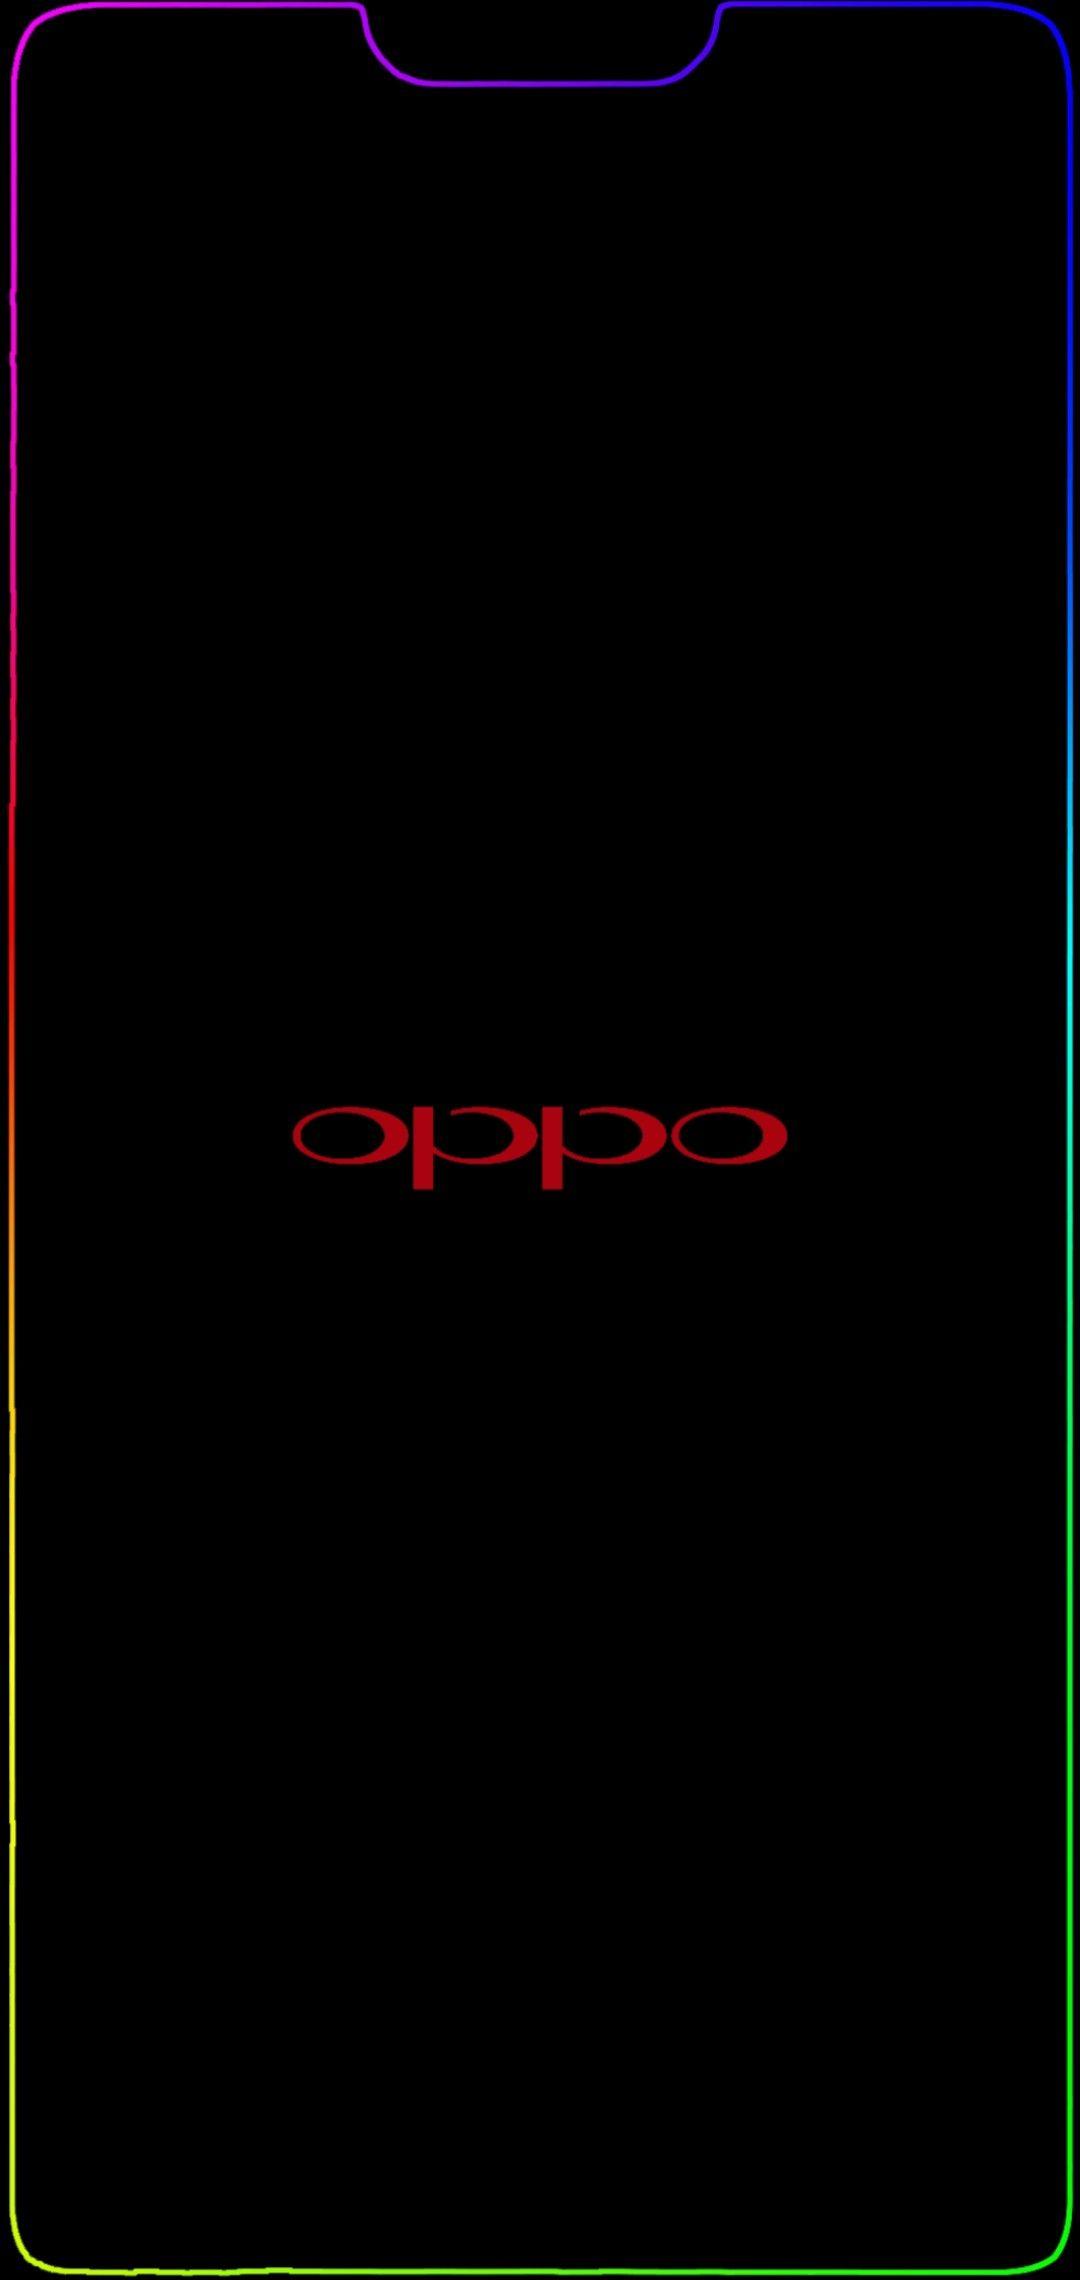 Oppo Logo Wallpaper